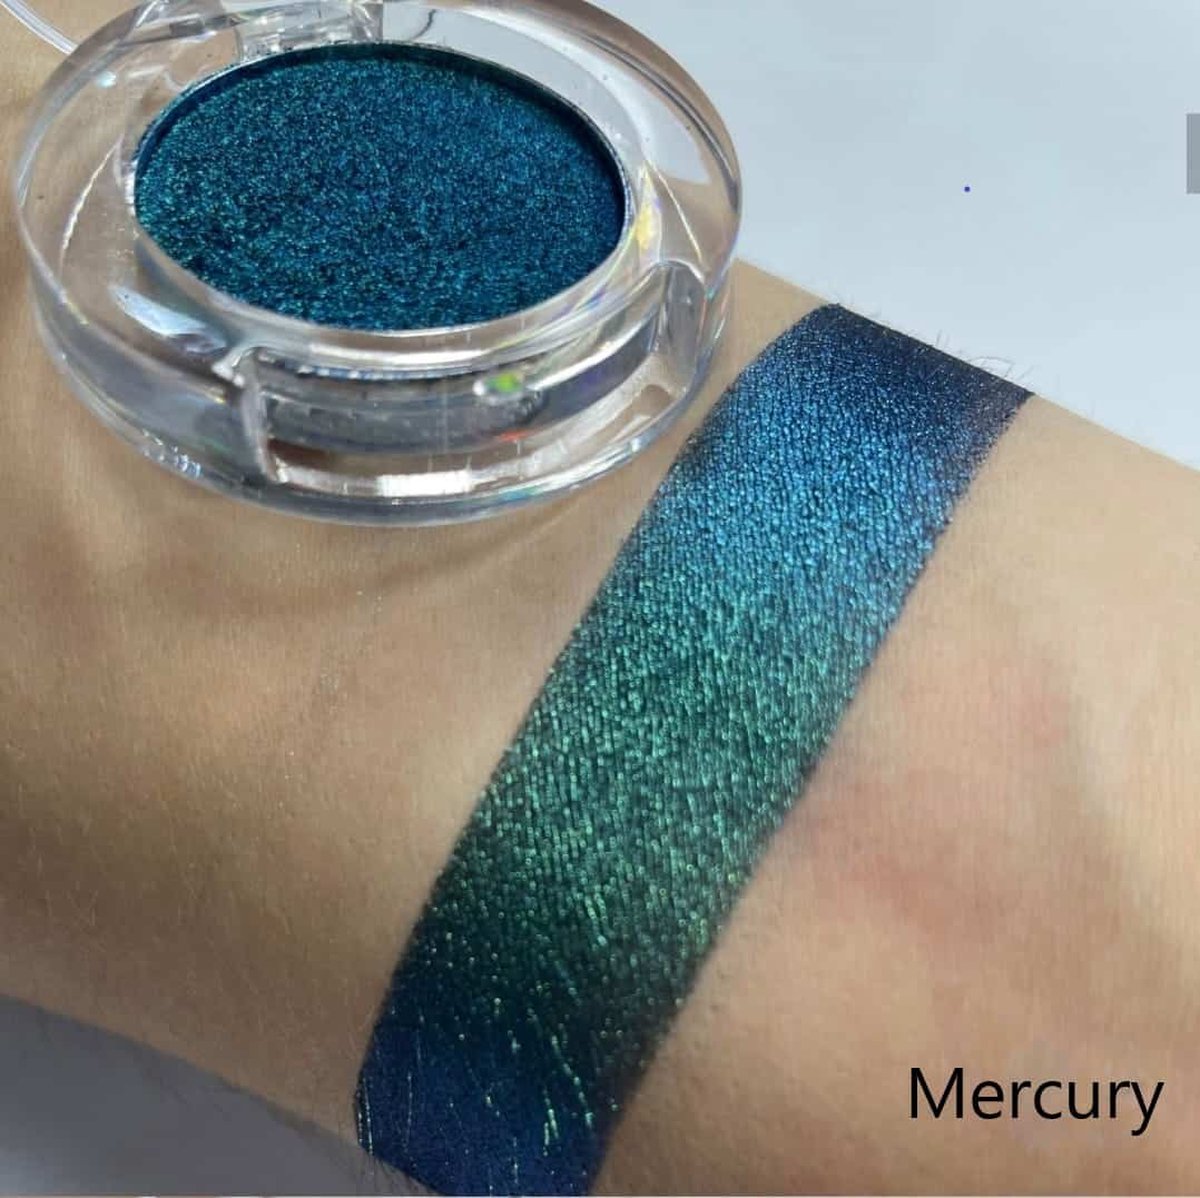 Duochrome oogschadow - GROEN/BLAUW - Mercury - Voor groene blauwe ogen - Veganistisch & Dierproefvrij - STARNIGHT Cosmetics